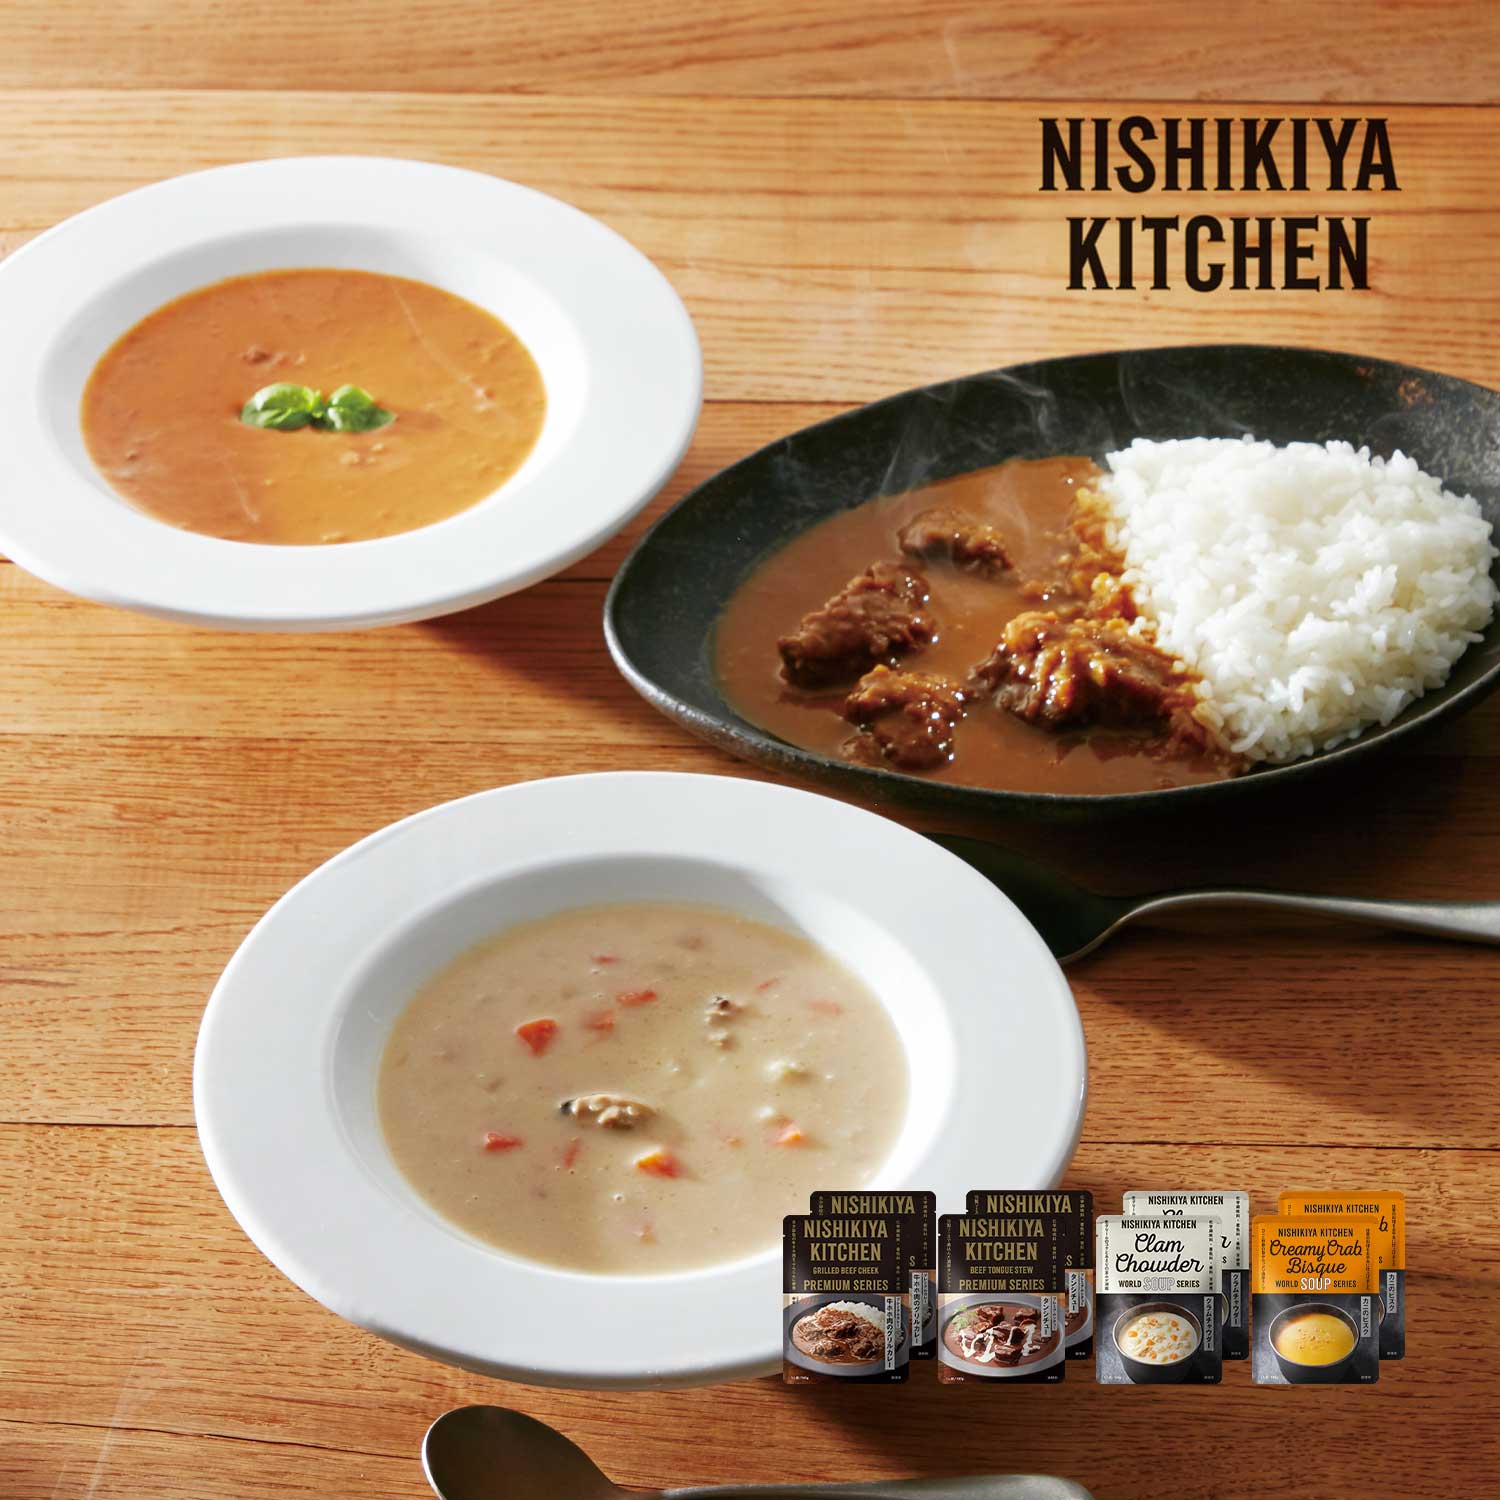 【NISHIKIYA KITCHEN】【送料無料】 NISHIKIYAイチオシ カレー & スープセット